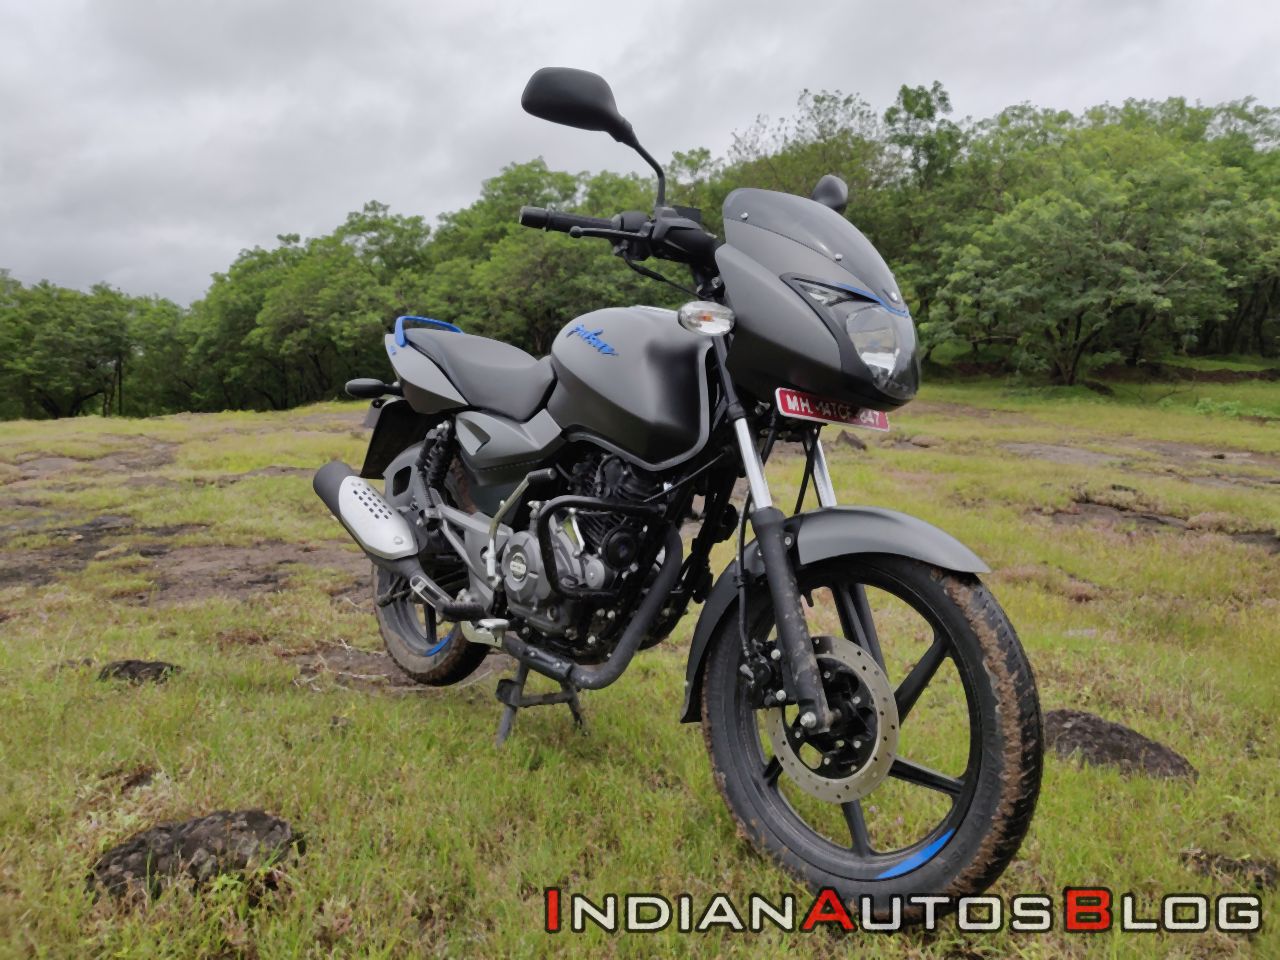 Bajaj Pulsar 125cc Bike Price In India